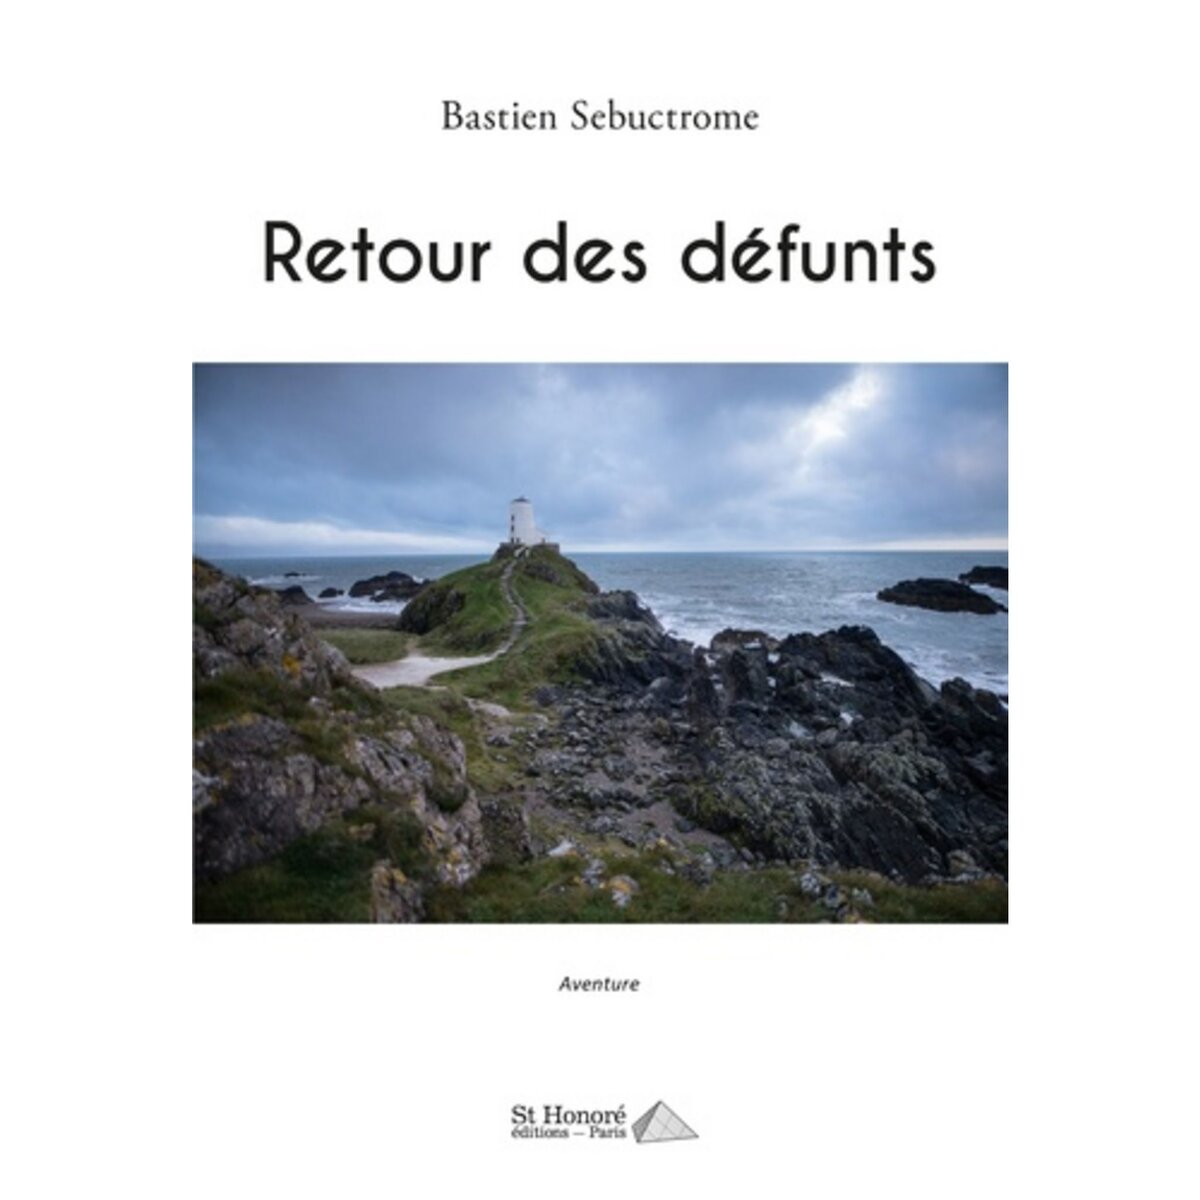  RETOUR DES DEFUNTS, Sebuctrome Bastien